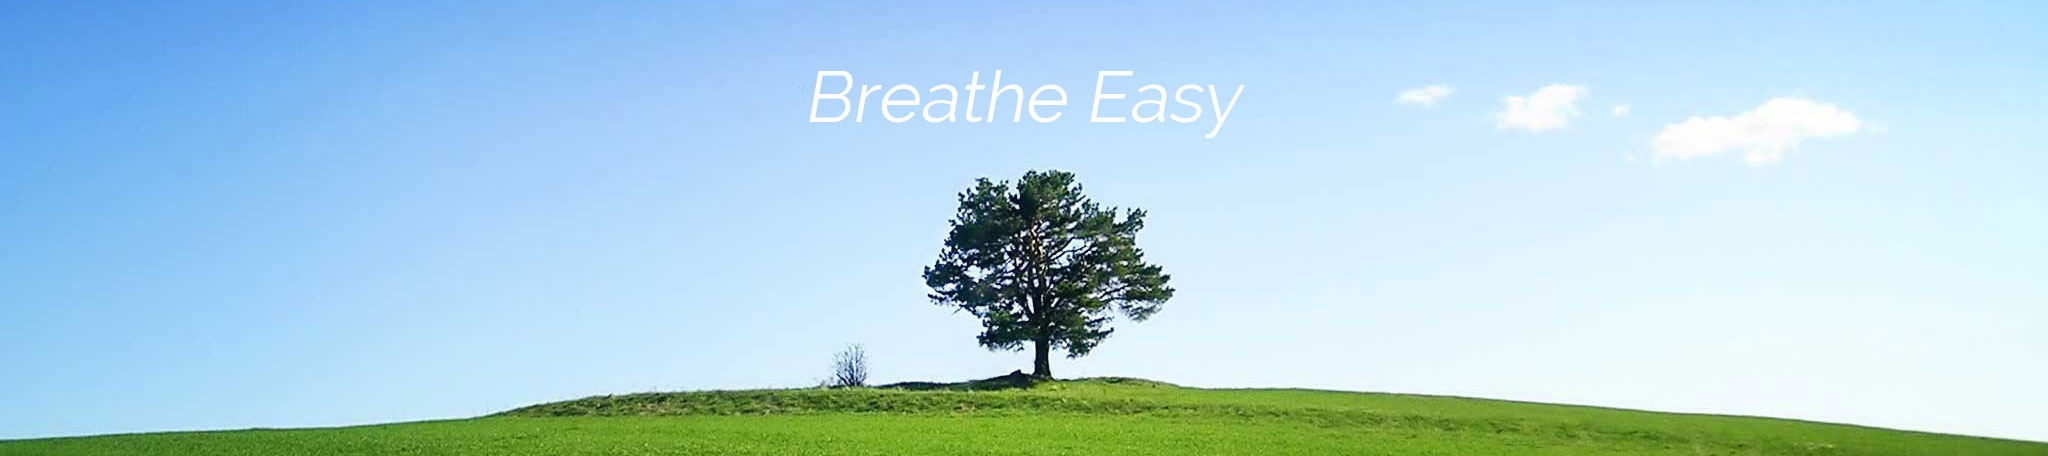 breathe easy